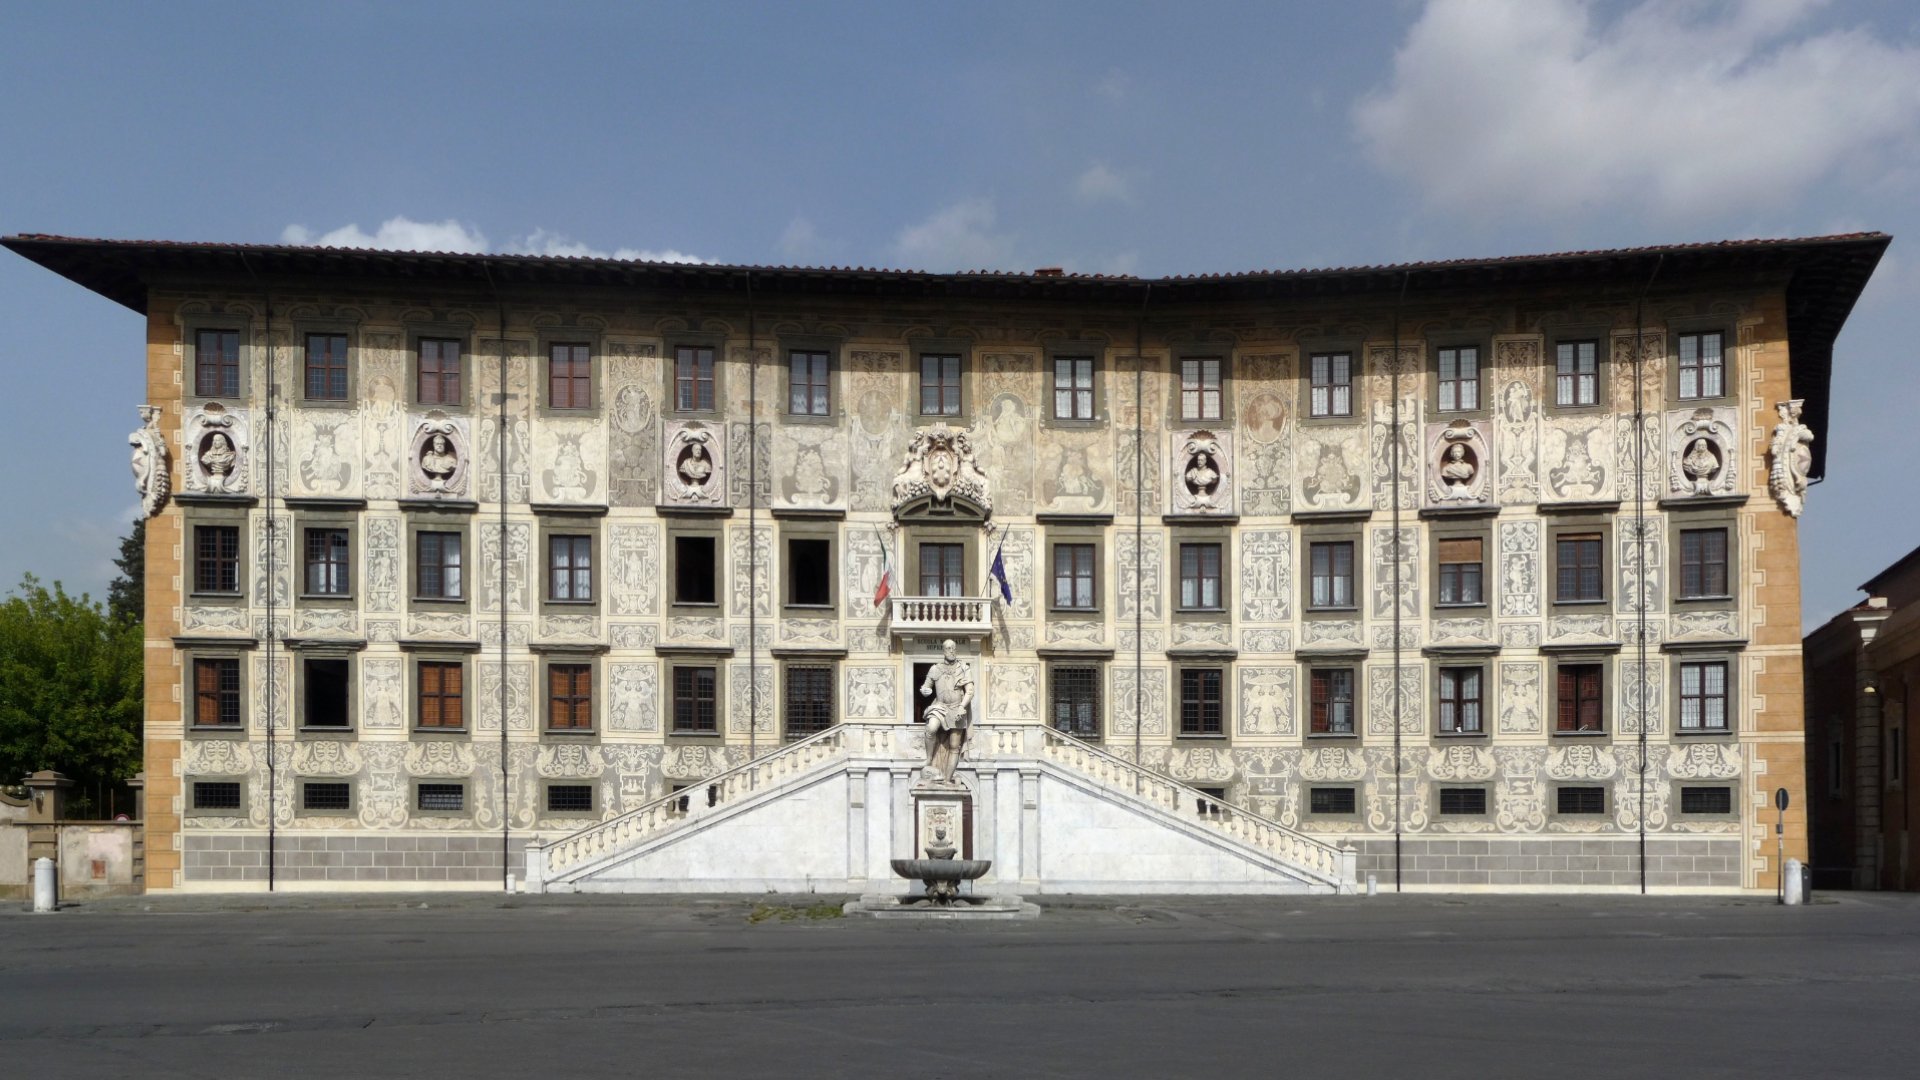 Después de la Piazza dei Miracoli, el recorrido te llevará a explorar la medieval Piazza dei Cavalieri, sede de la Scuola Normale Superiore de Pisa.